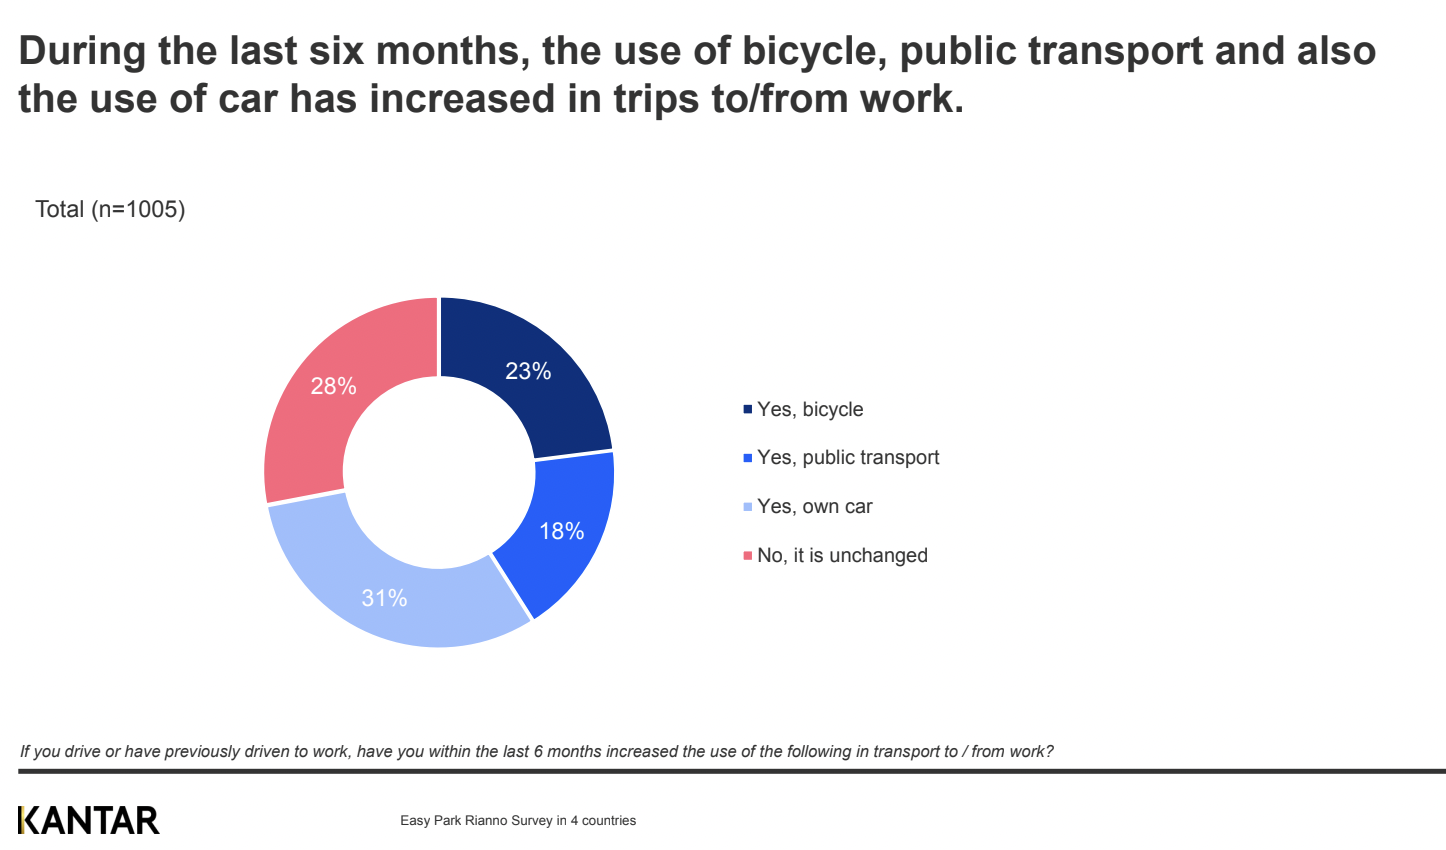 De stigende energipriser får danskerne til at ændre vaner. 4 ud af 10 danskere kører mindre i bil i løbet af dagen. 41 procent tager oftere cykel eller offentlig transport på arbejde.